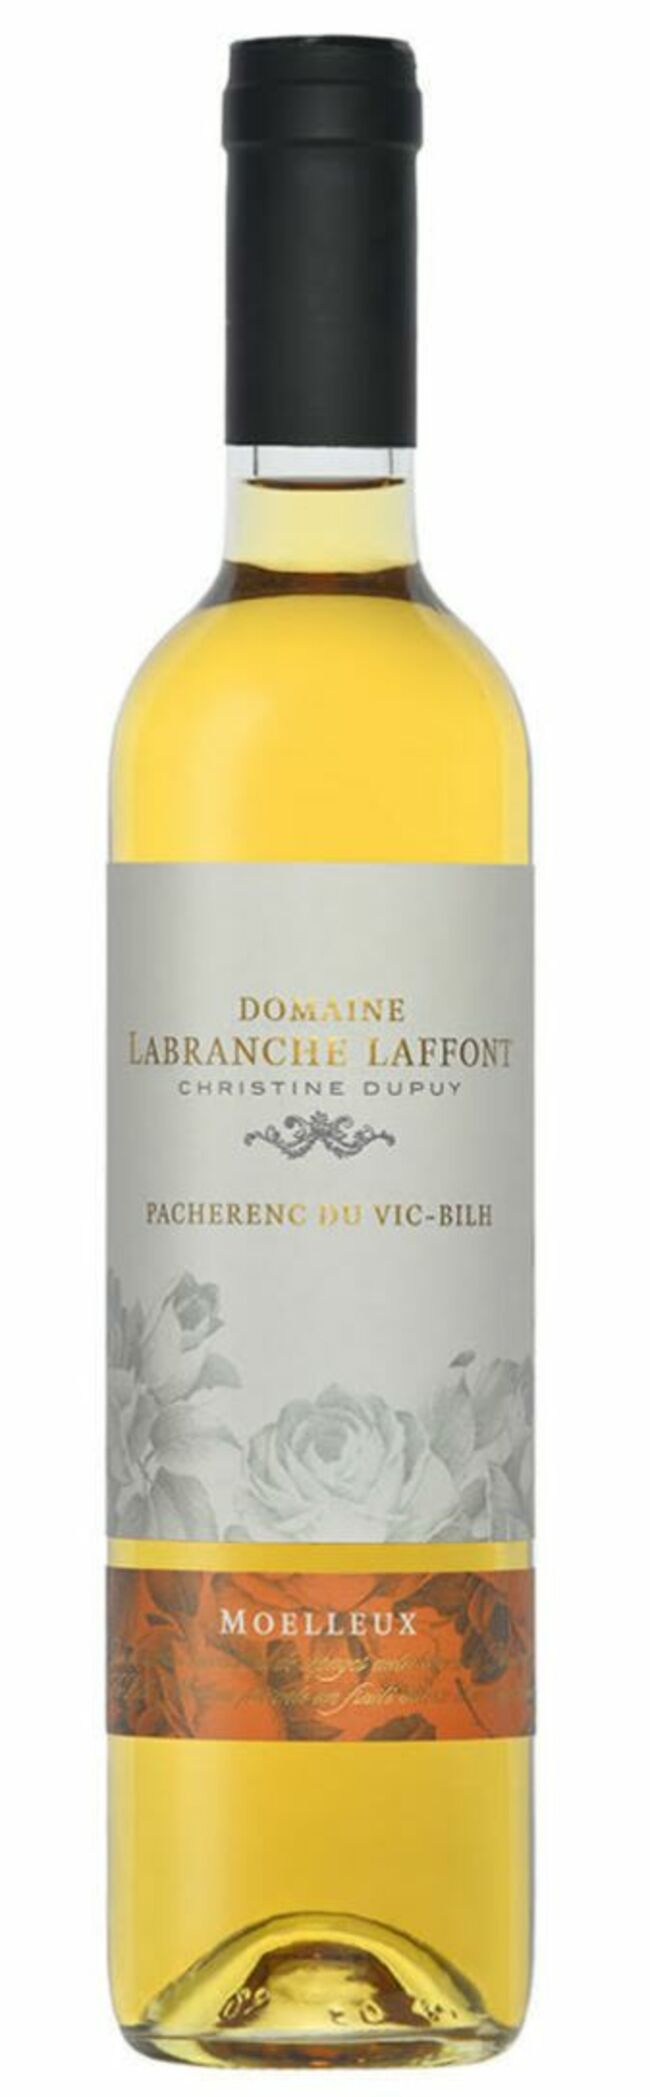 Pacherenc du Vic-Bilh moelleux 2021, Domaine Labranche-Laffont (Christine Dupuy), 18 €, chez les cavistes.